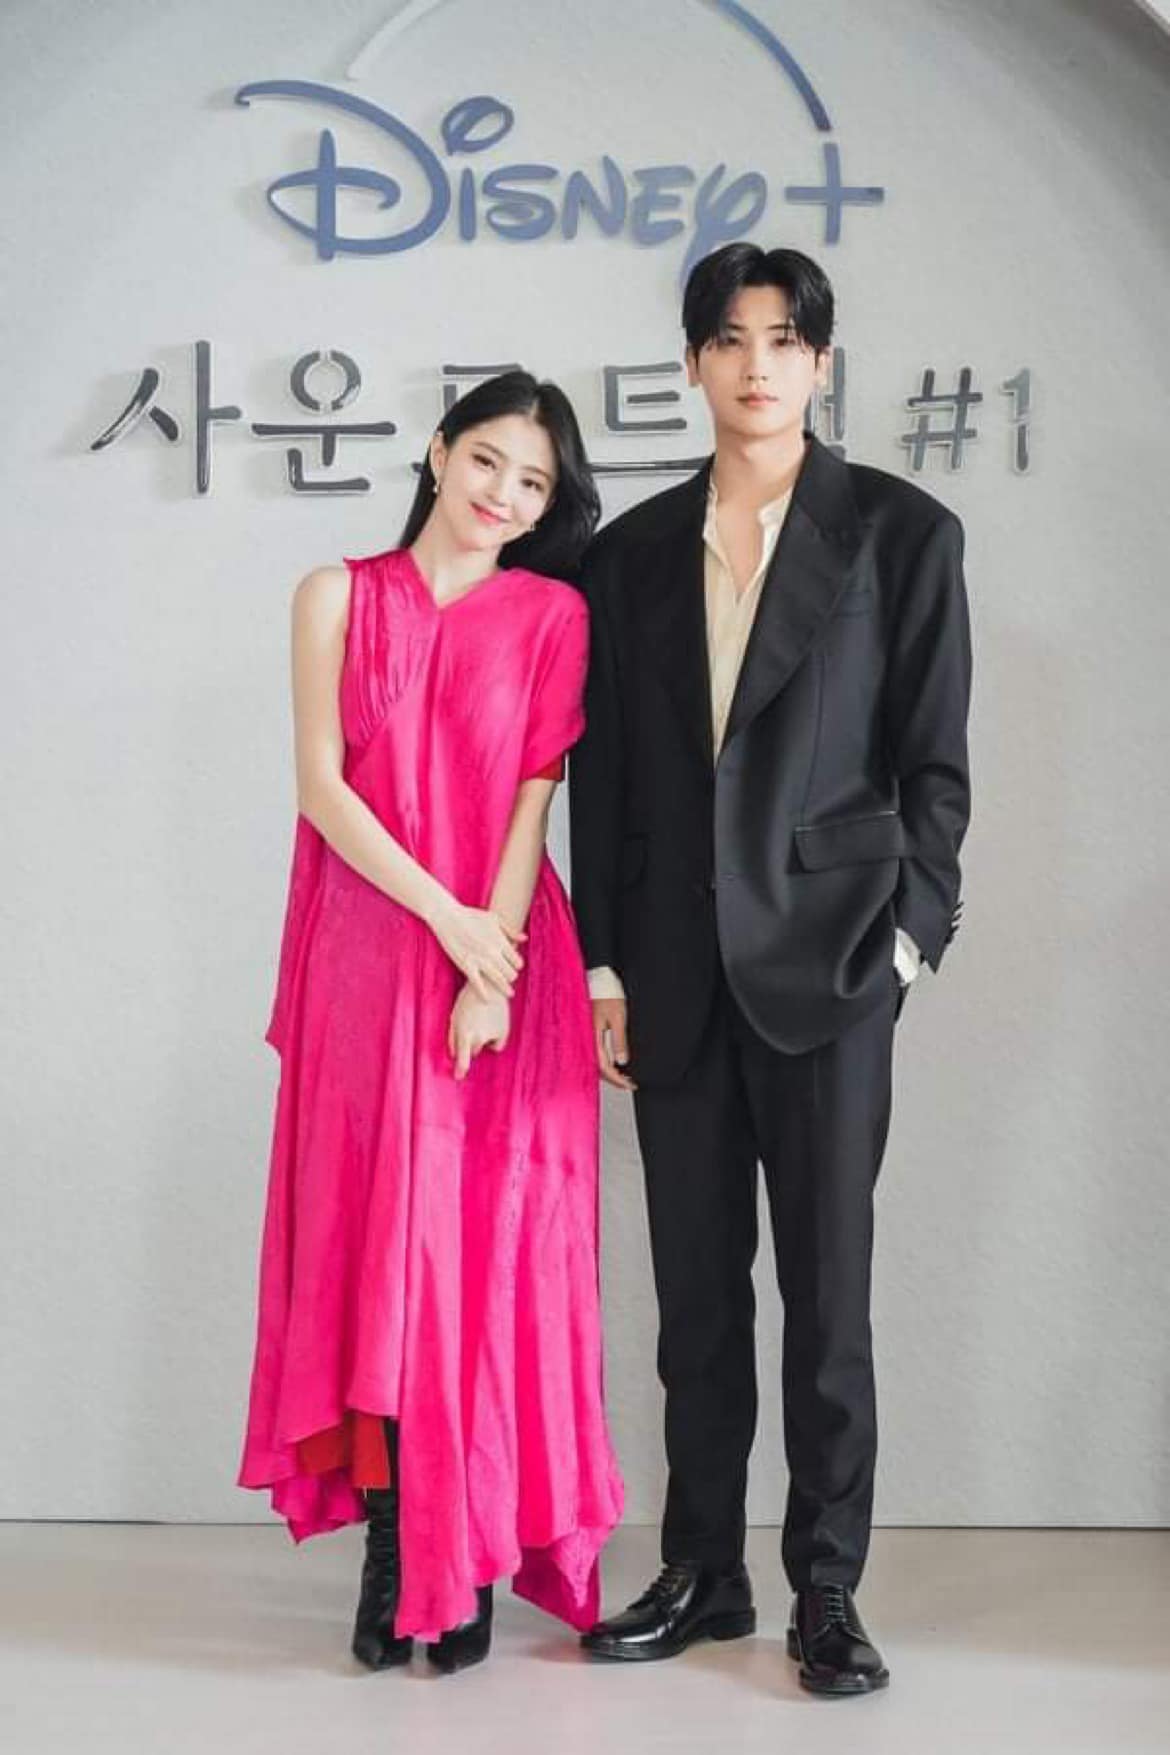 ‘Rụng tim’ với hình ảnh xinh đẹp của cặp đôi Han So Hee & Park Hyung Sik trong họp báo bộ phim “Soundtrack #1”: Netizen hò hét 'đẹp đôi quá anh chị ơi'! - Ảnh 3